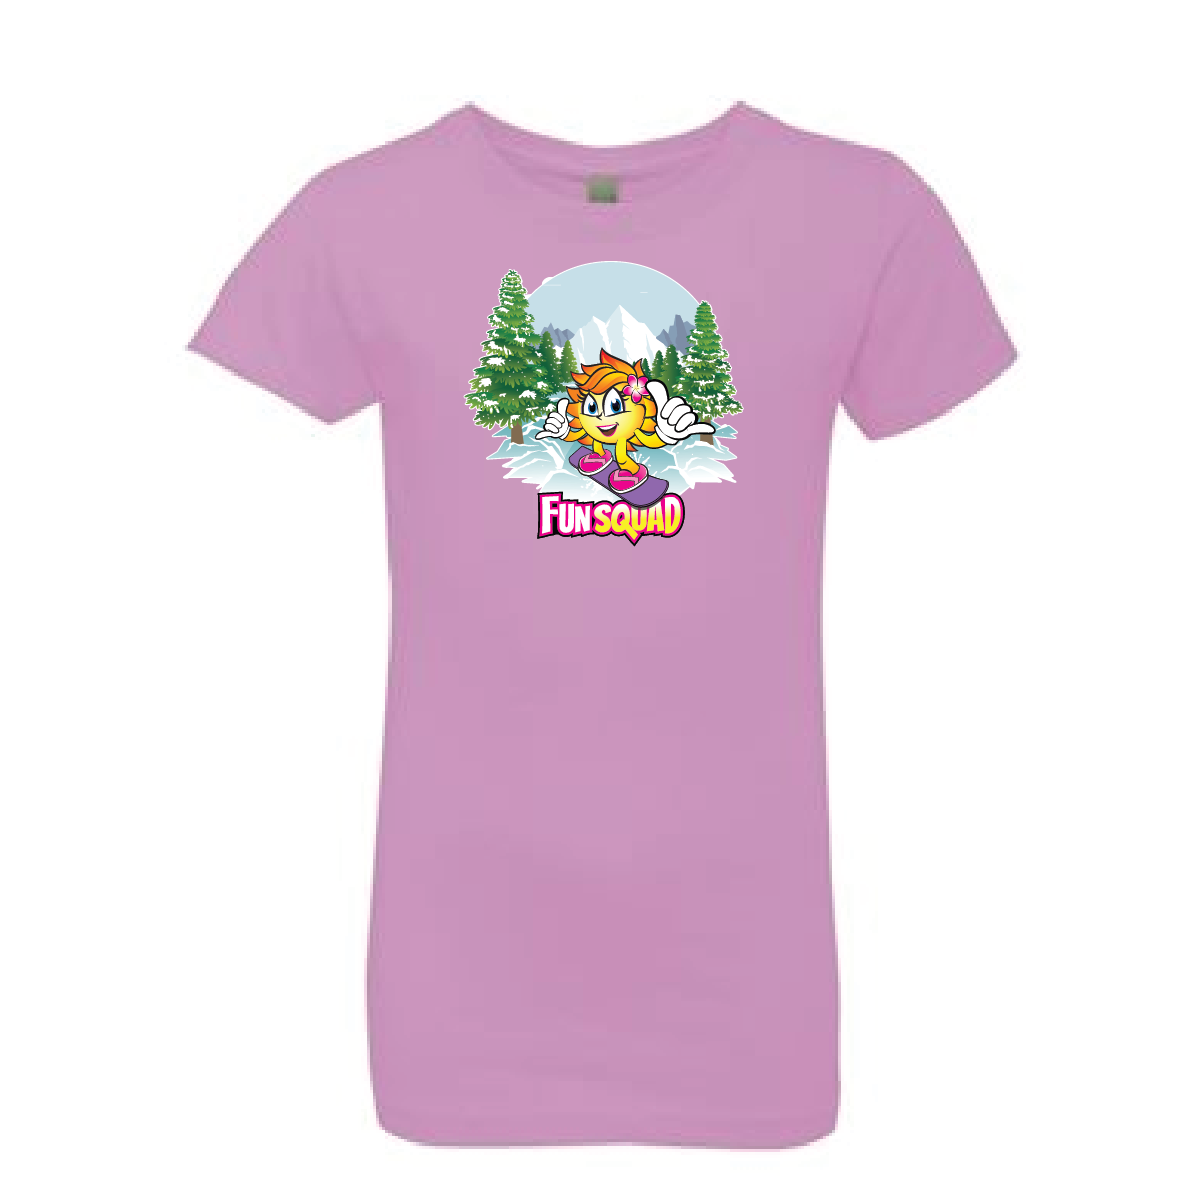 T-shirt Girls - Sunny Girl Snowboard